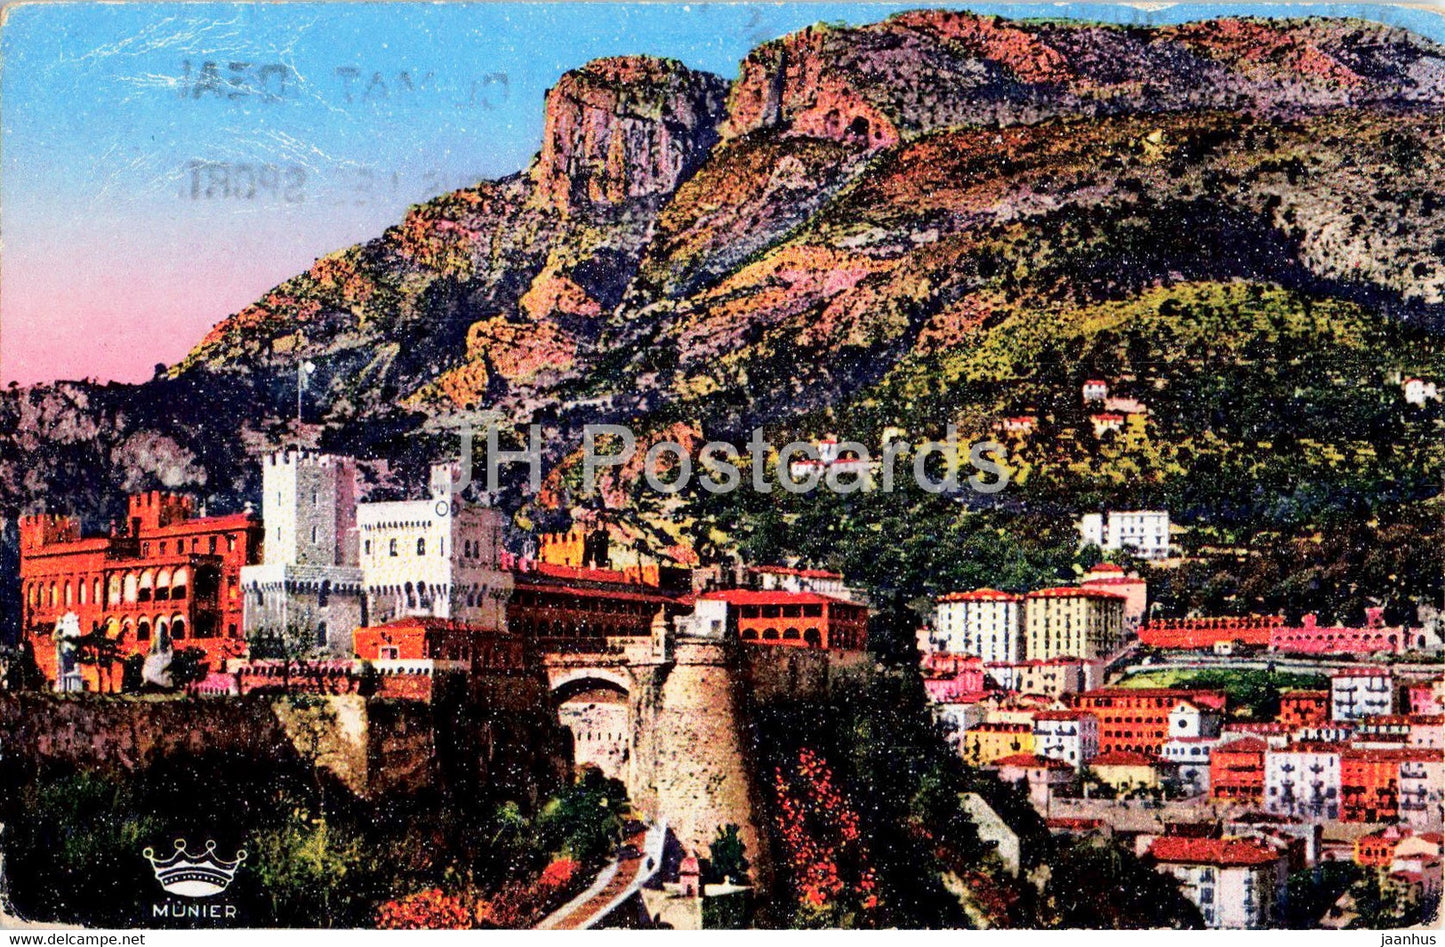 Monaco - Le Palais du Prince et la Tete de Chien - 20 - old postcard - 1948 - Monaco - used - JH Postcards